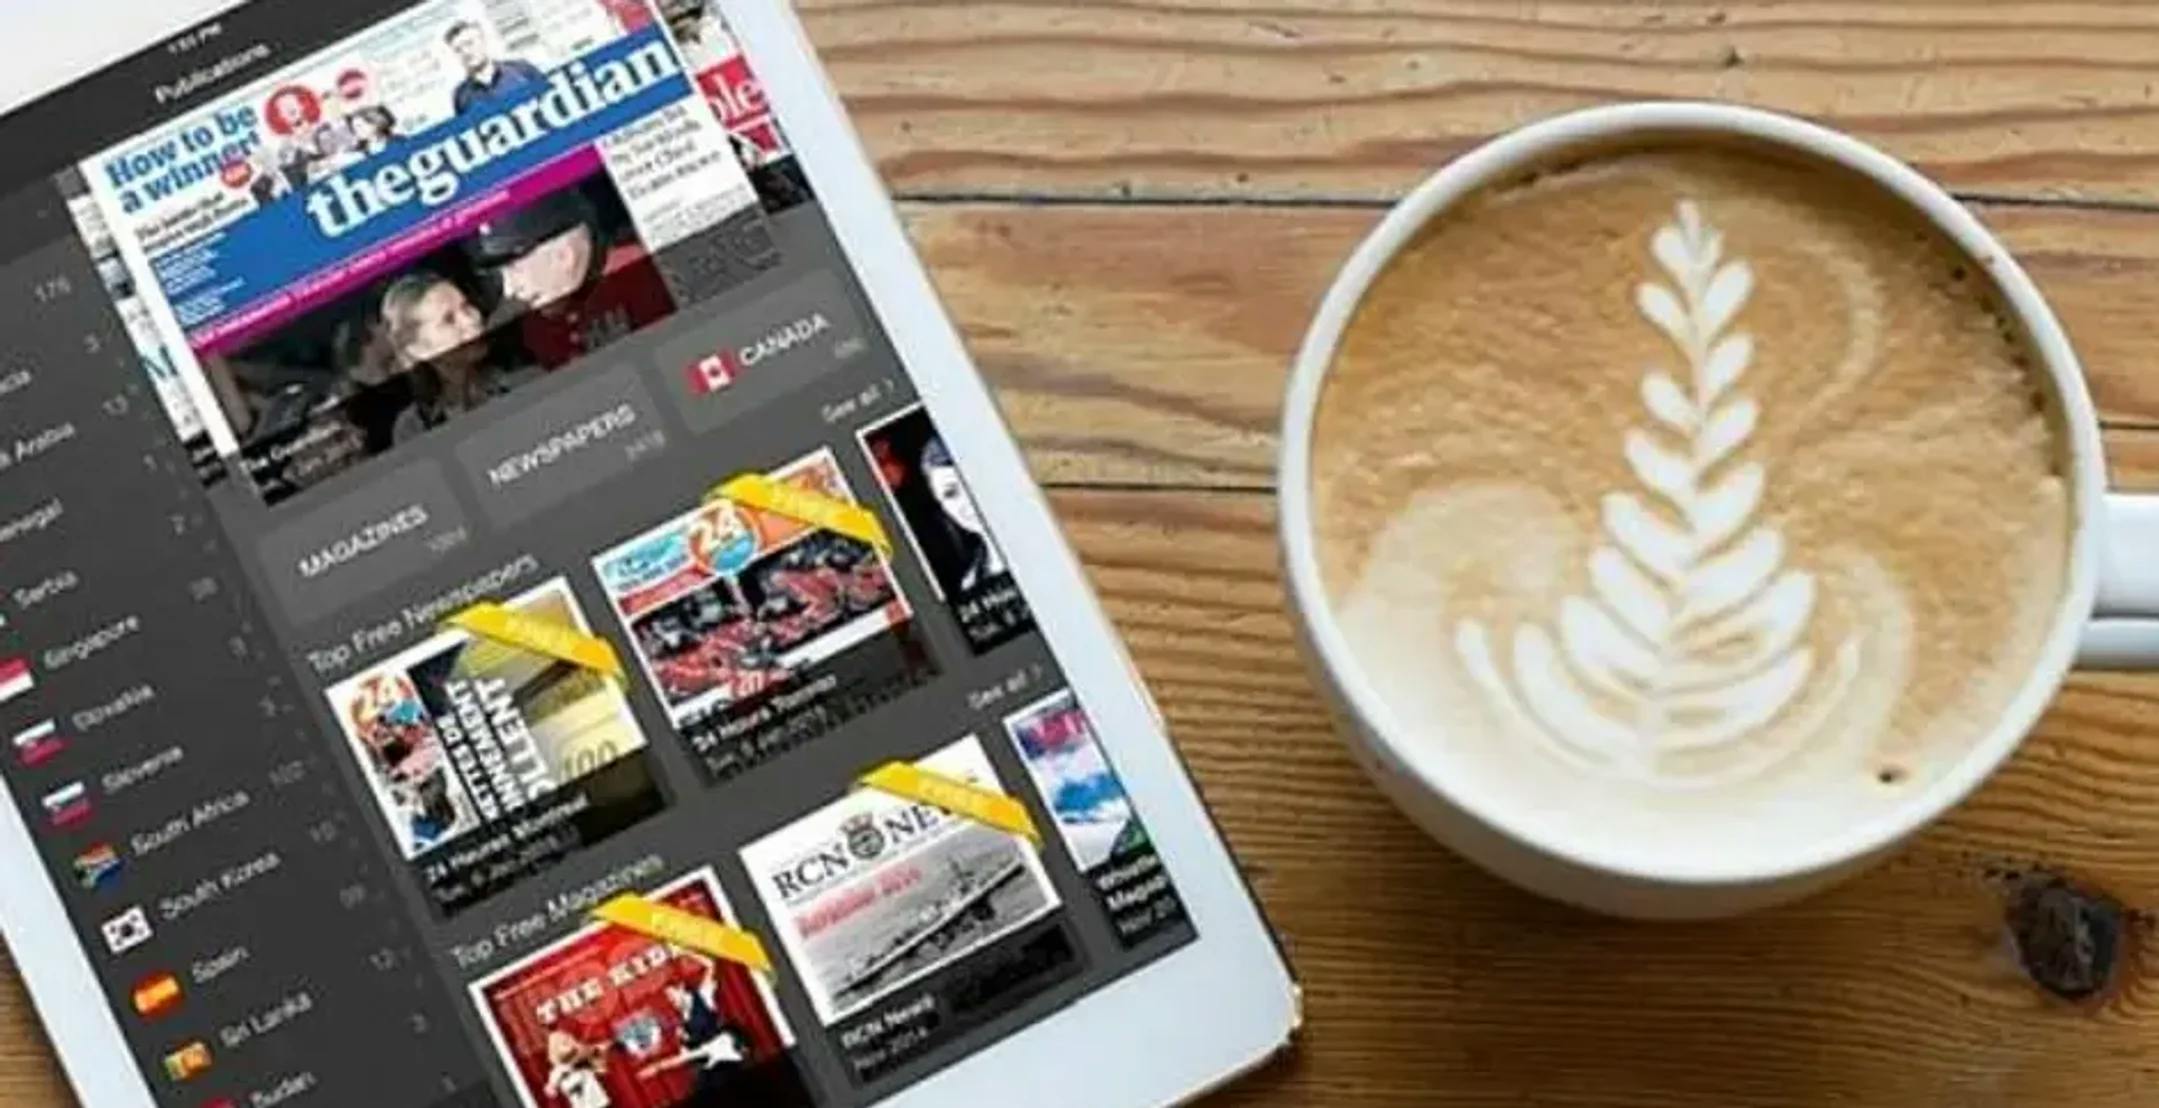 Digital avis på nettbrett og kaffikopp ved sida av